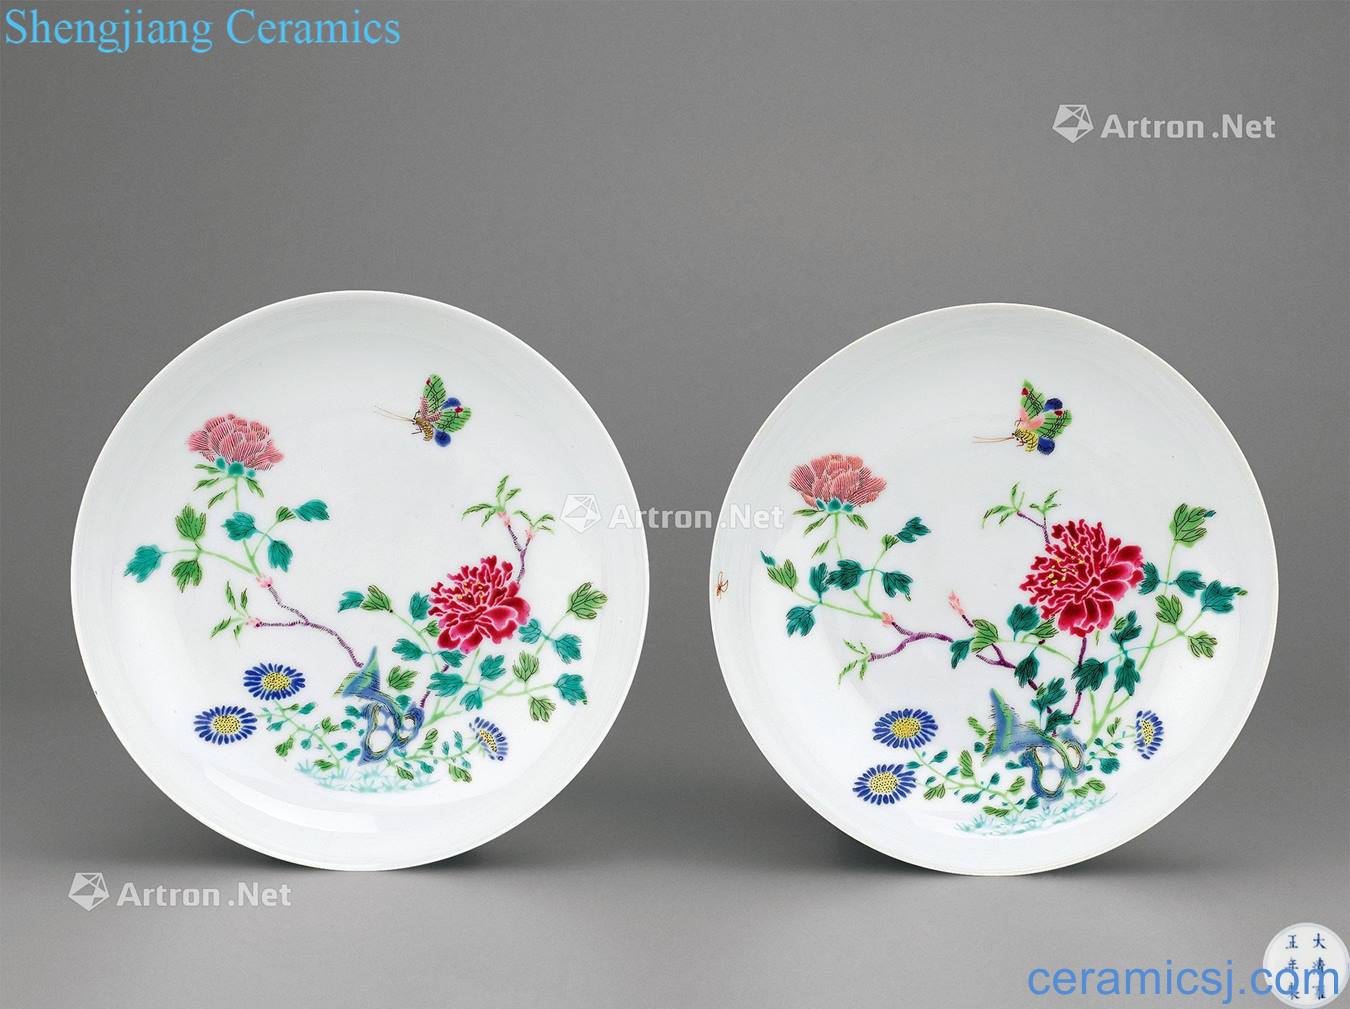 Qing yongzheng pastel flowers plate (a)